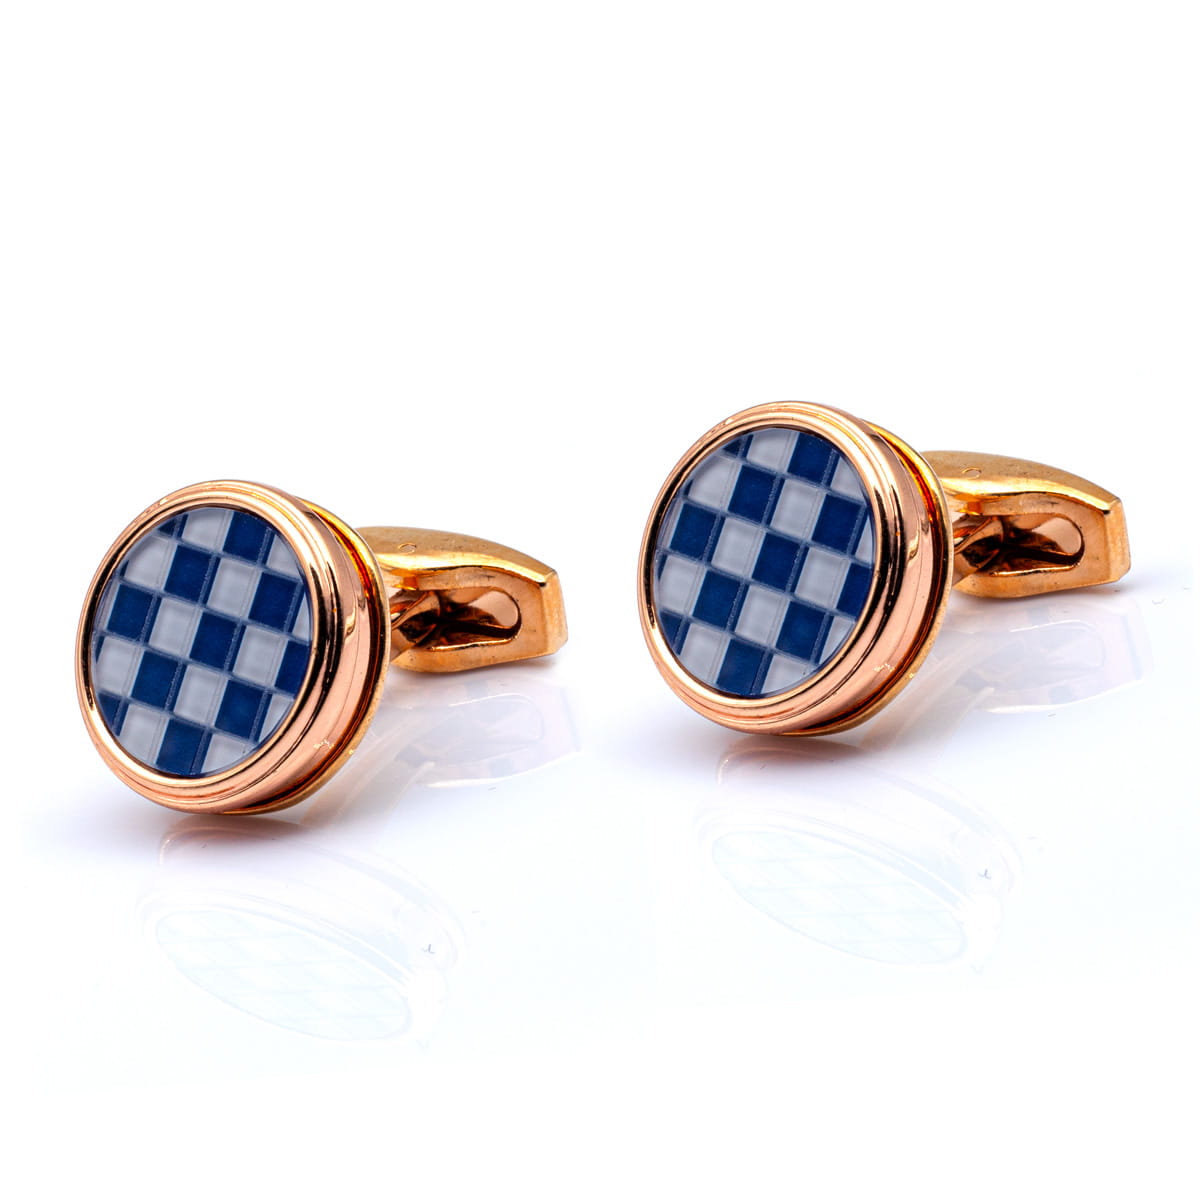 Spinki do mankietów klasyczne złote okrągłe w niebieską szachownicę EM - EM Men's Accessories